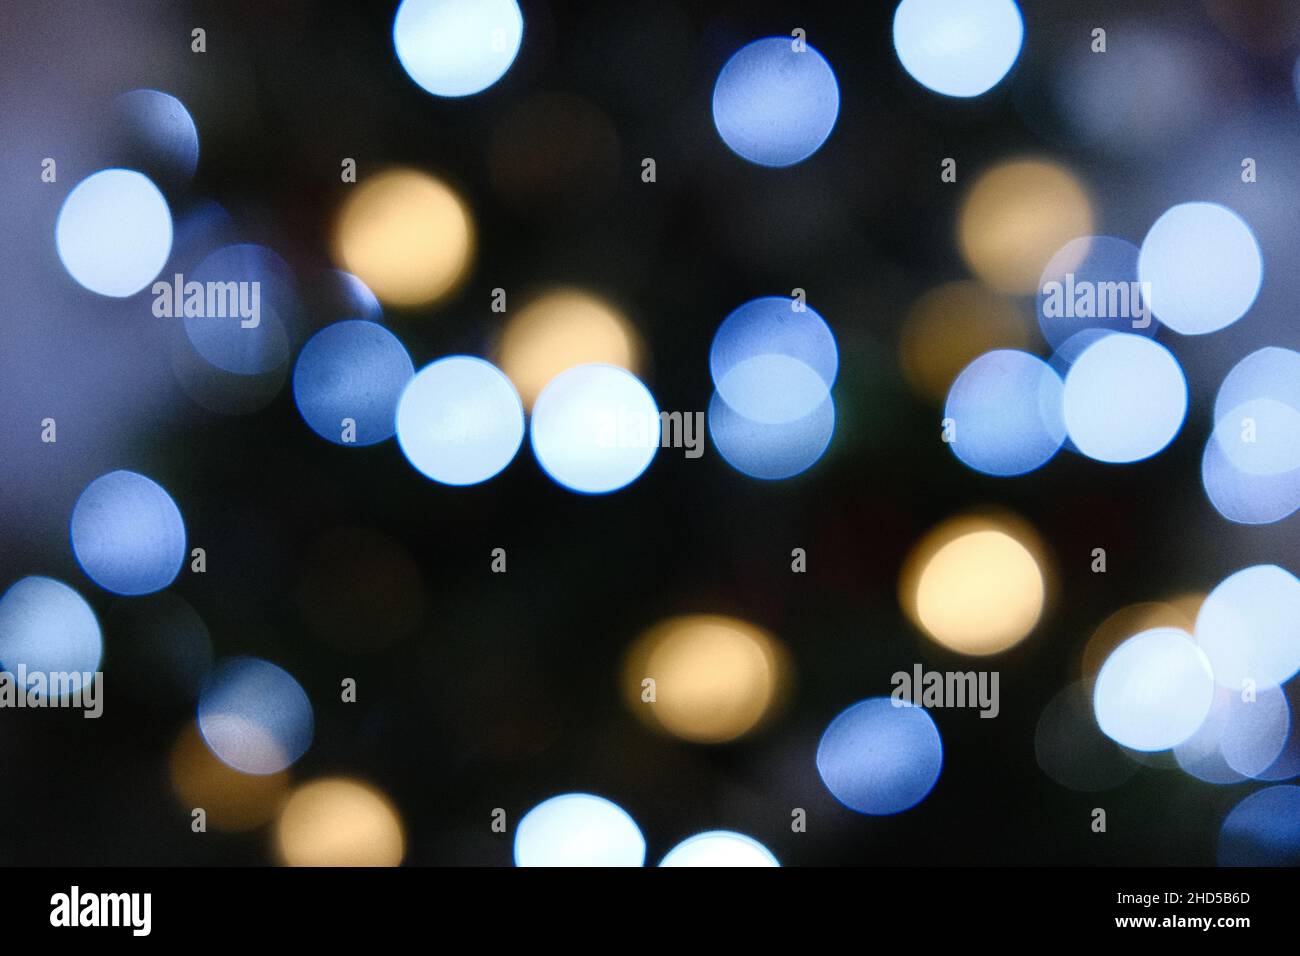 Sfocato, fuori fuoco albero di Natale con luci che mostrano palline bokeh dando un sogno-come l'effetto festivo Foto Stock